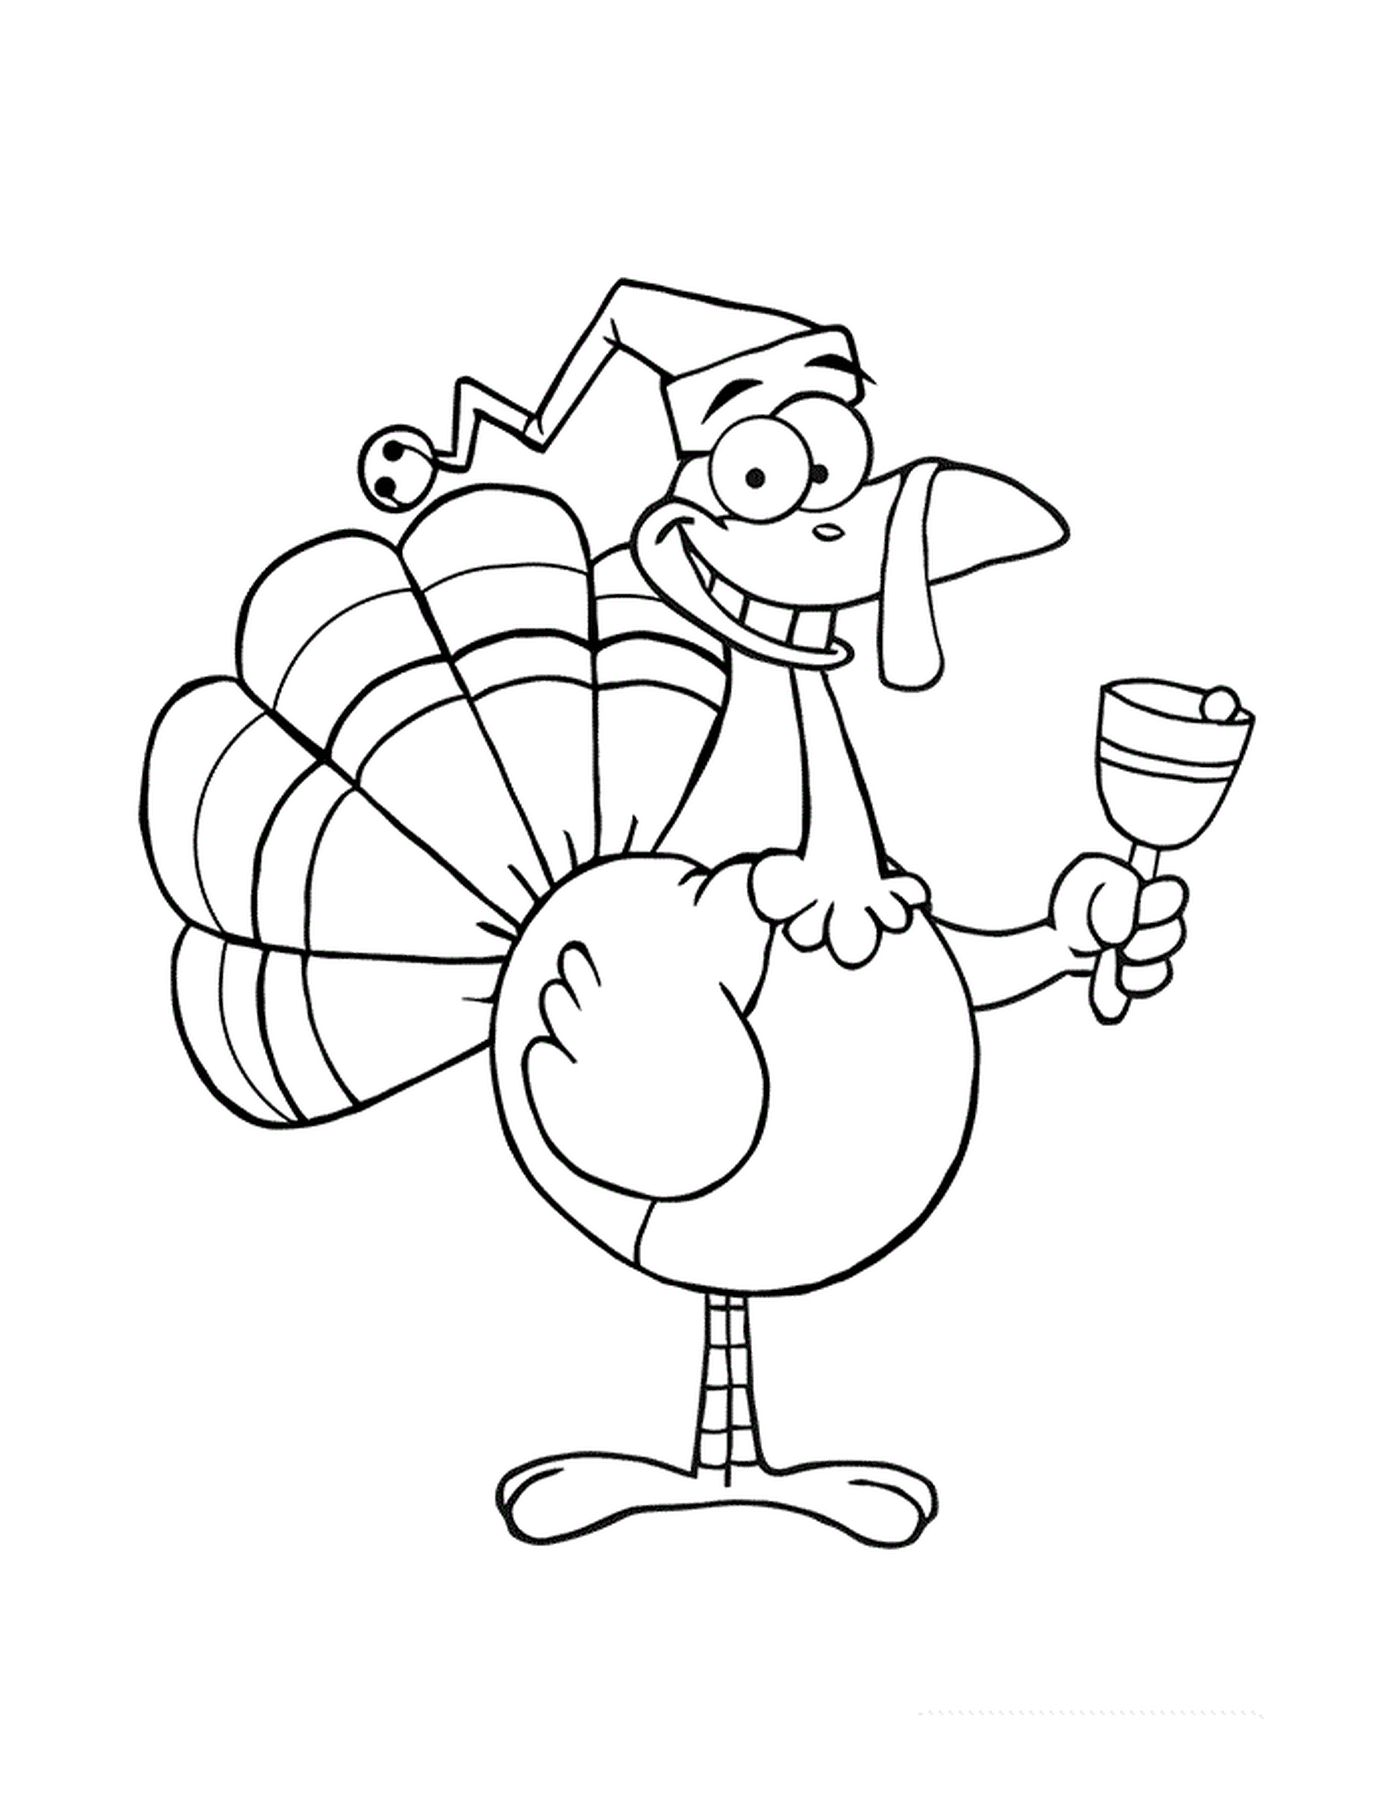  Un pavo de dibujos animados con un sombrero bufón y sosteniendo una copa de vino 